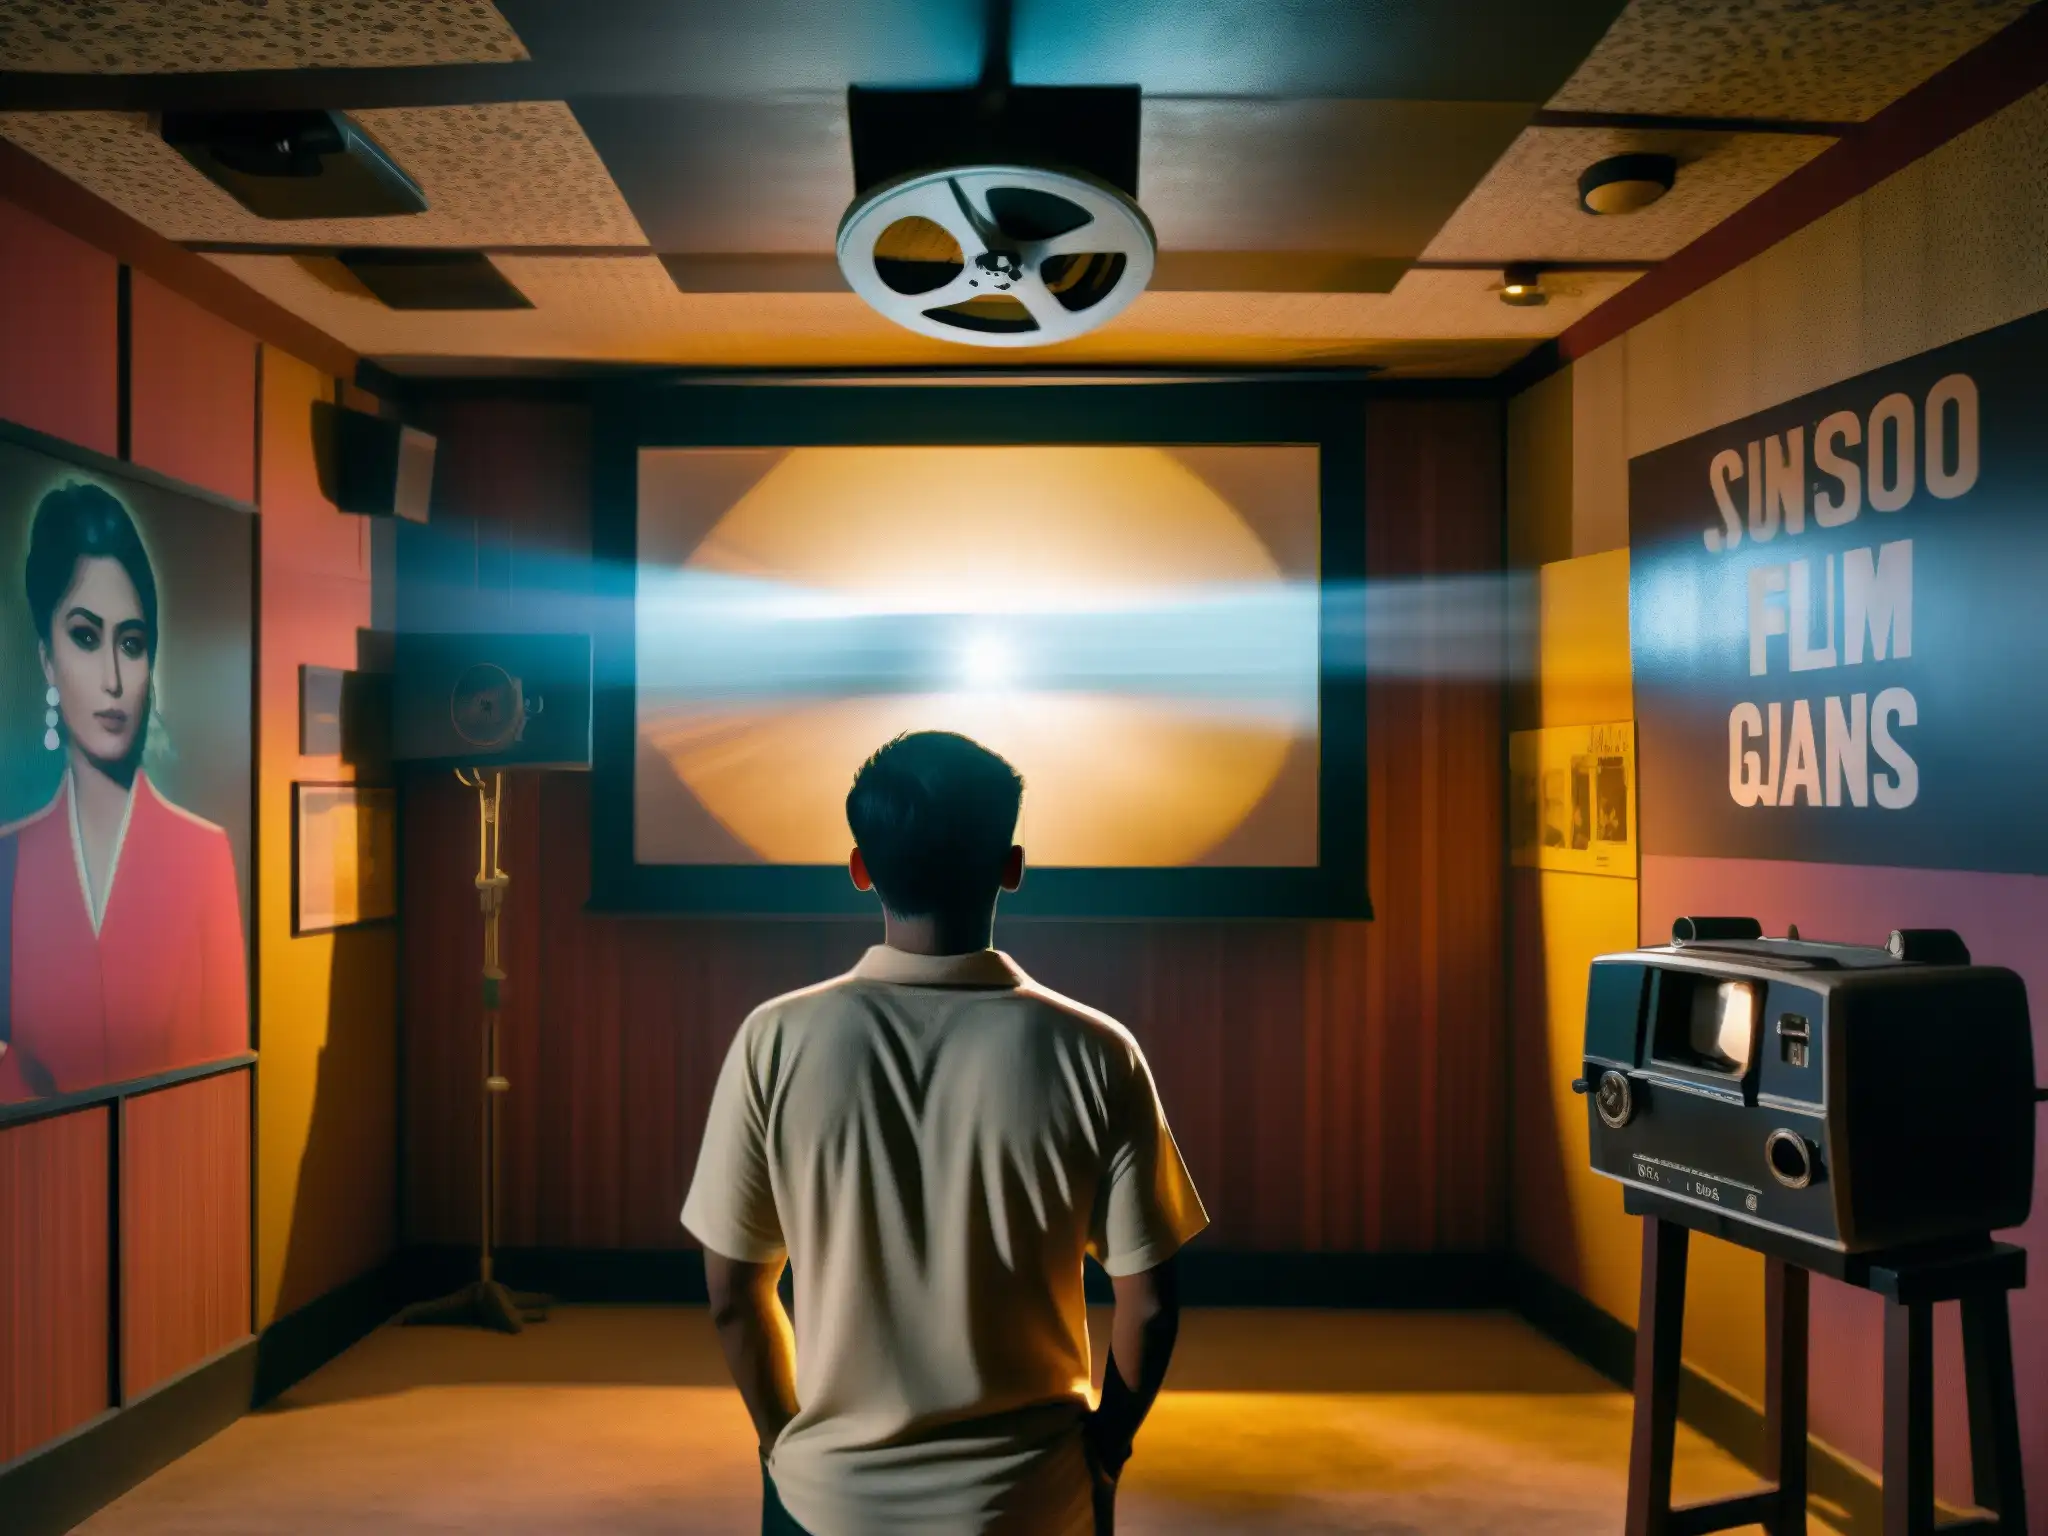 En la misteriosa sala de proyección de un antiguo cine de Bollywood, se vislumbra la presencia del fantasma del operador